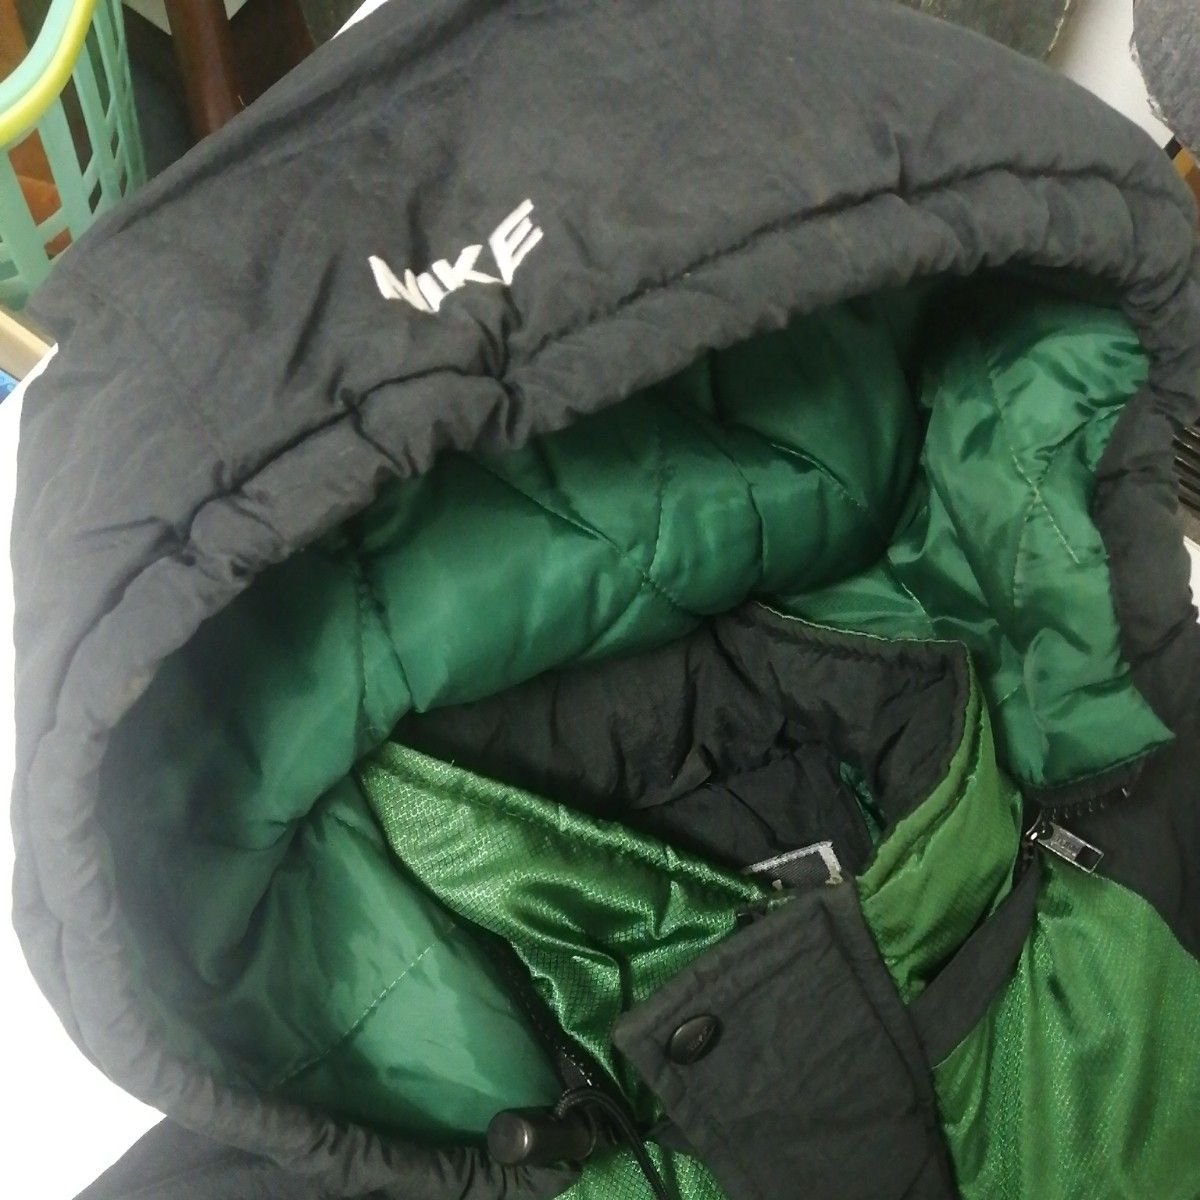 90s ヴィンテージ ナイキ スポーツジャケット 緑 Mサイズ 元ネタシュプリーム USA製 NIKE スポーツウェア パーカー